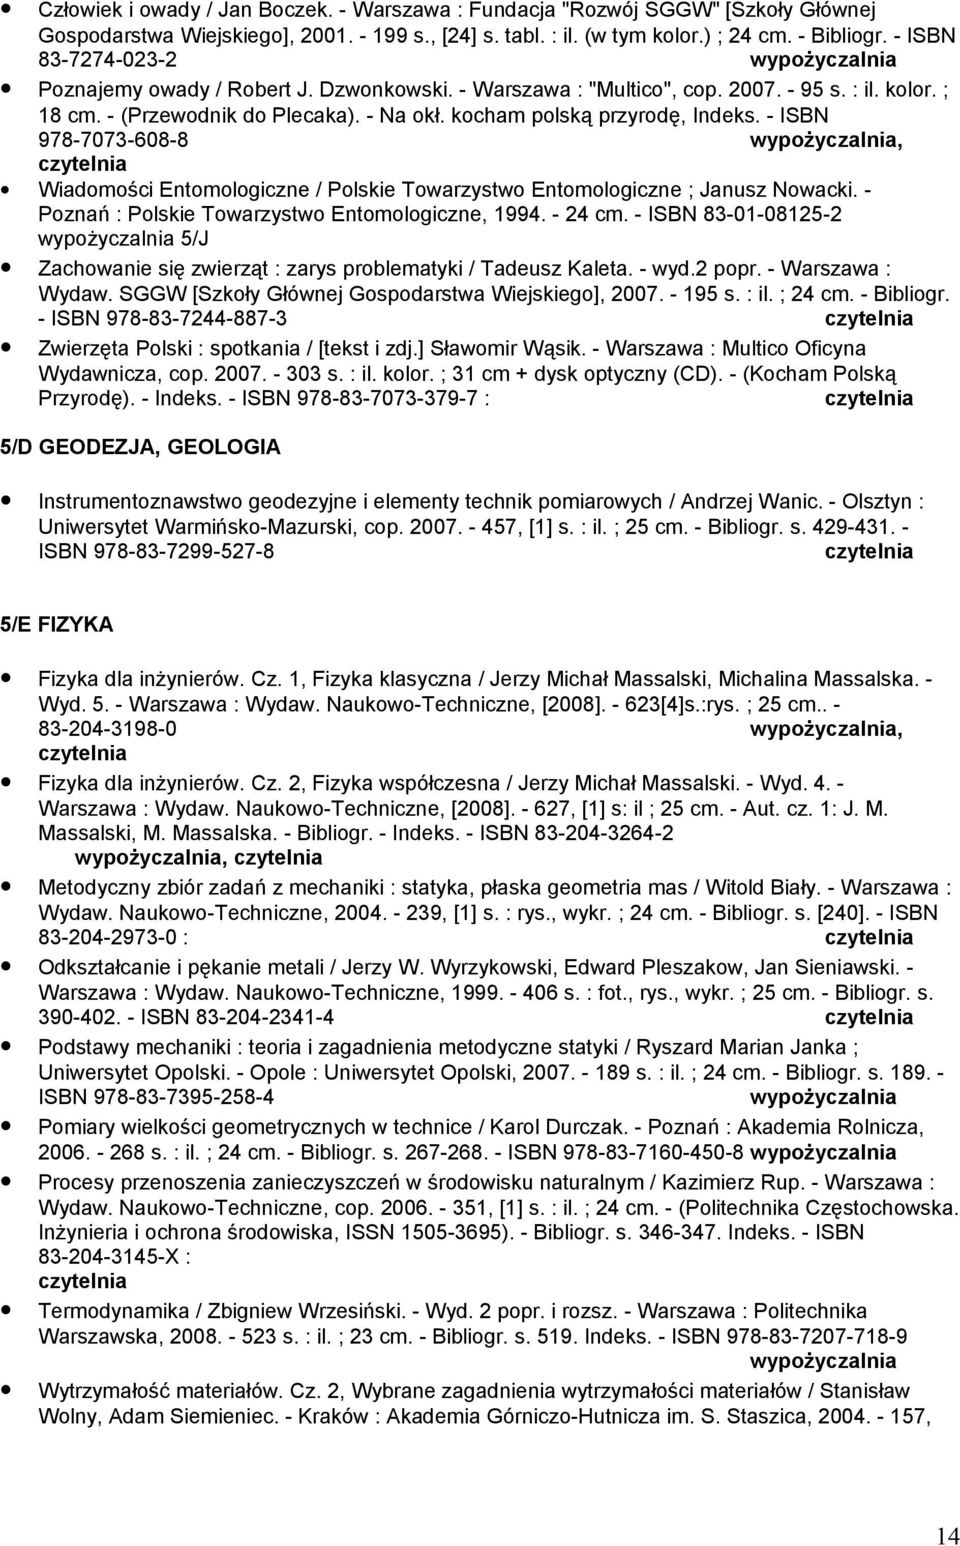 - ISBN 978-7073-608-8, Wiadomości Entomologiczne / Polskie Towarzystwo Entomologiczne ; Janusz Nowacki. - Poznań : Polskie Towarzystwo Entomologiczne, 1994. - 24 cm.